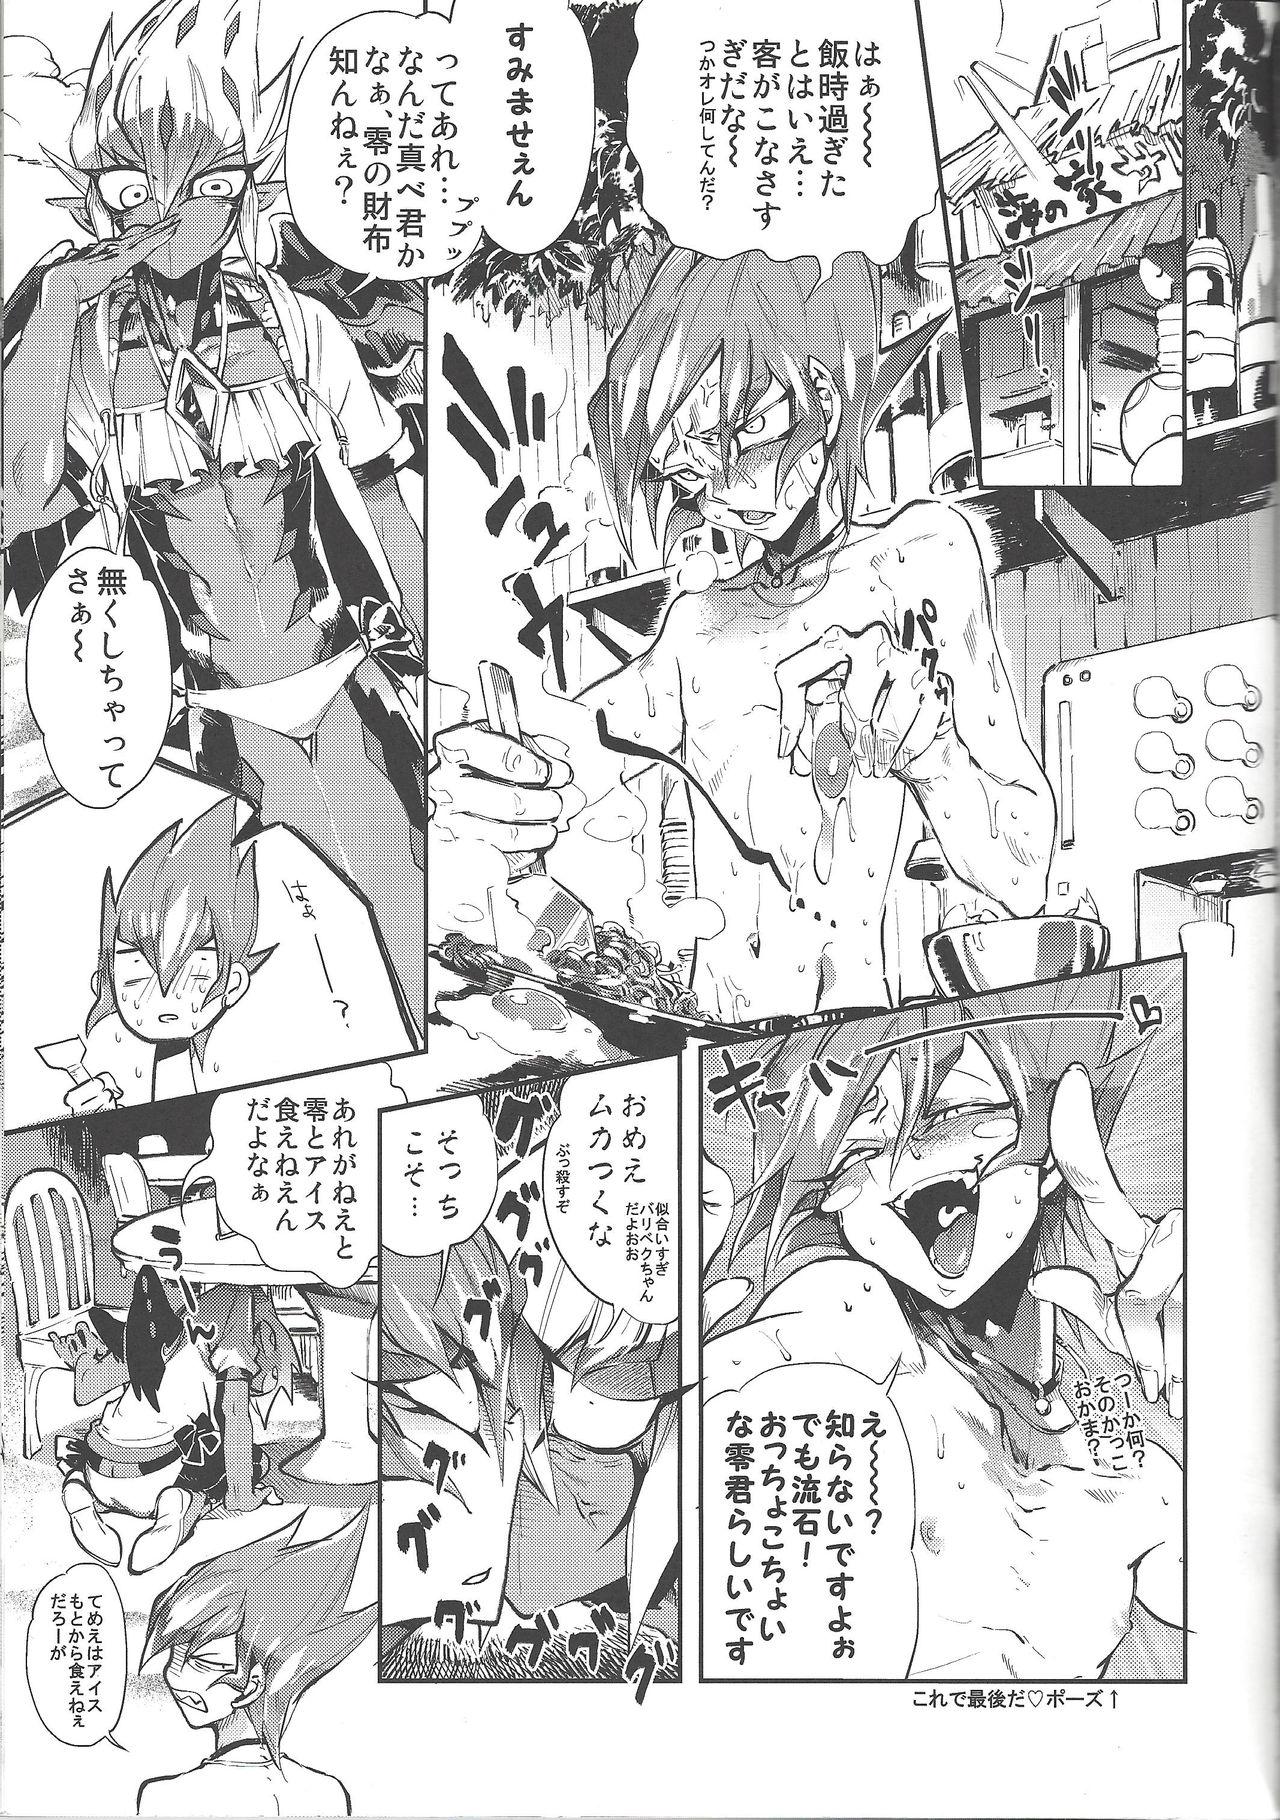 Asia XXXX no Vec-chan 3 - Yu-gi-oh zexal POV - Page 4